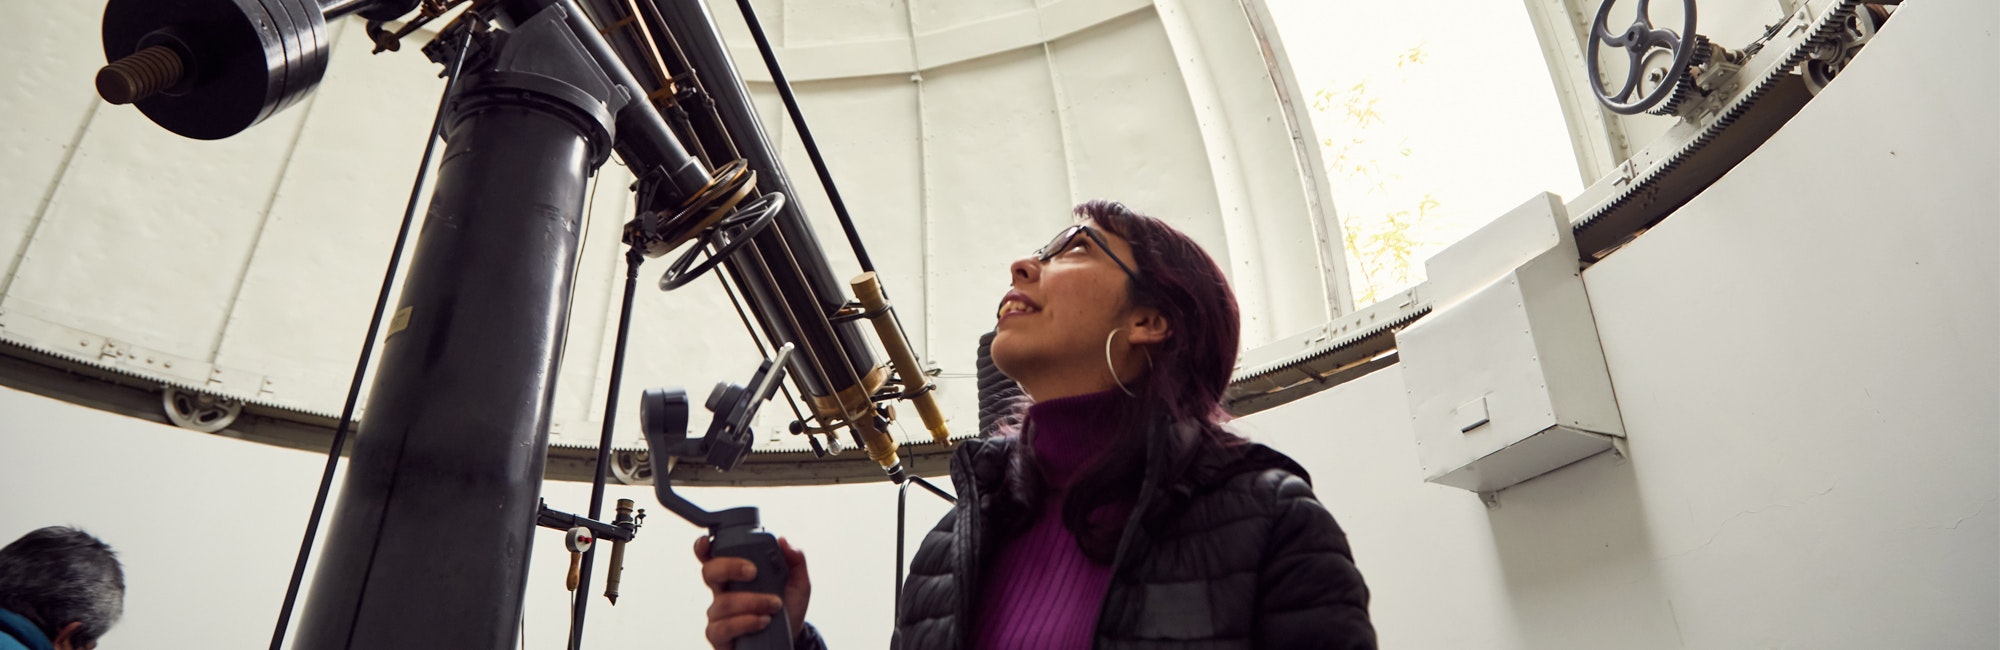 una mujer mirando hacia arriba y sosteniendo el enorme telescopio